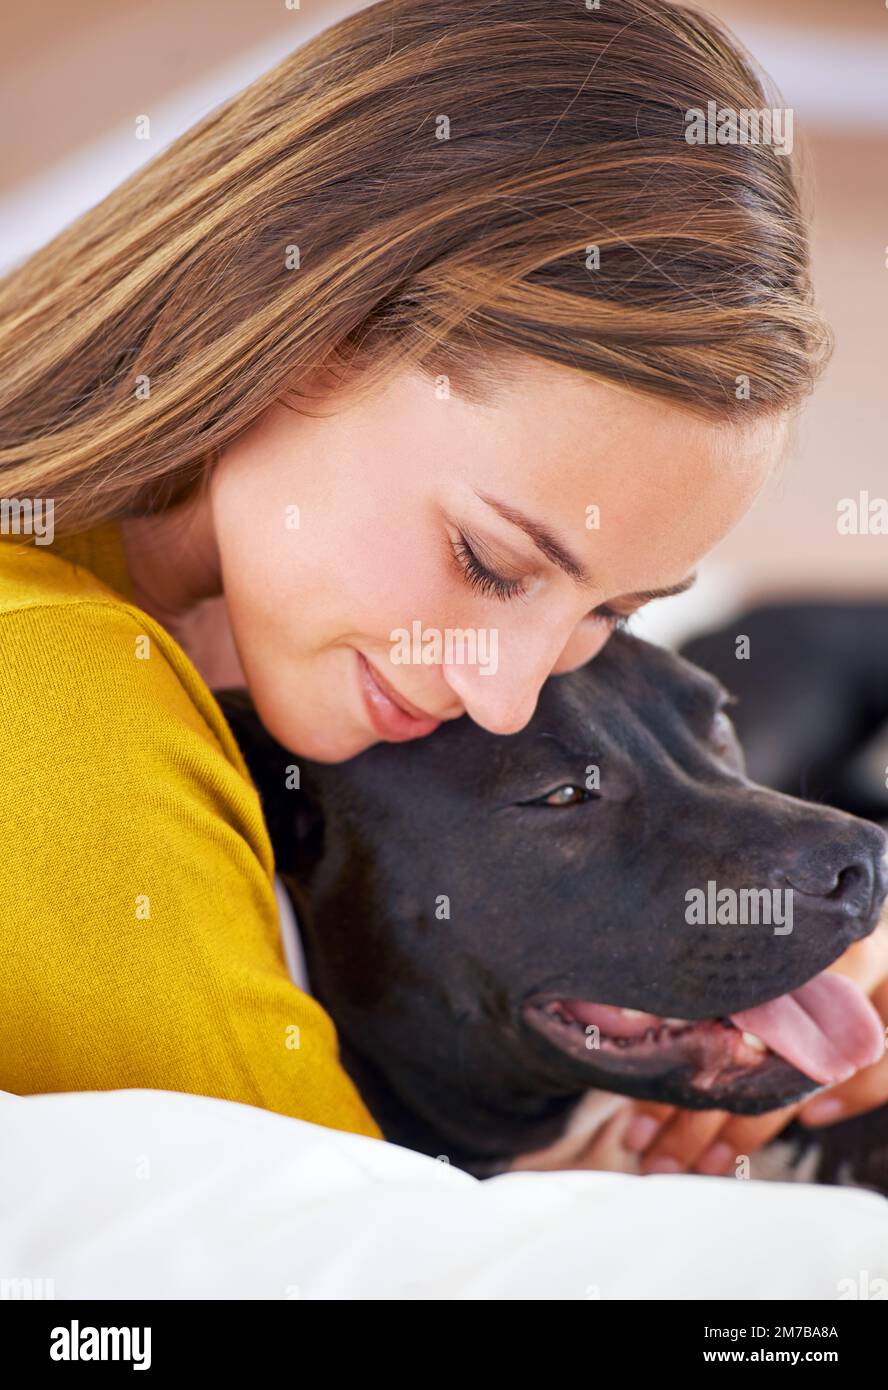 HES il mio ragazzo preferito. una giovane donna attraente che coccola con il suo cane sul divano. Foto Stock